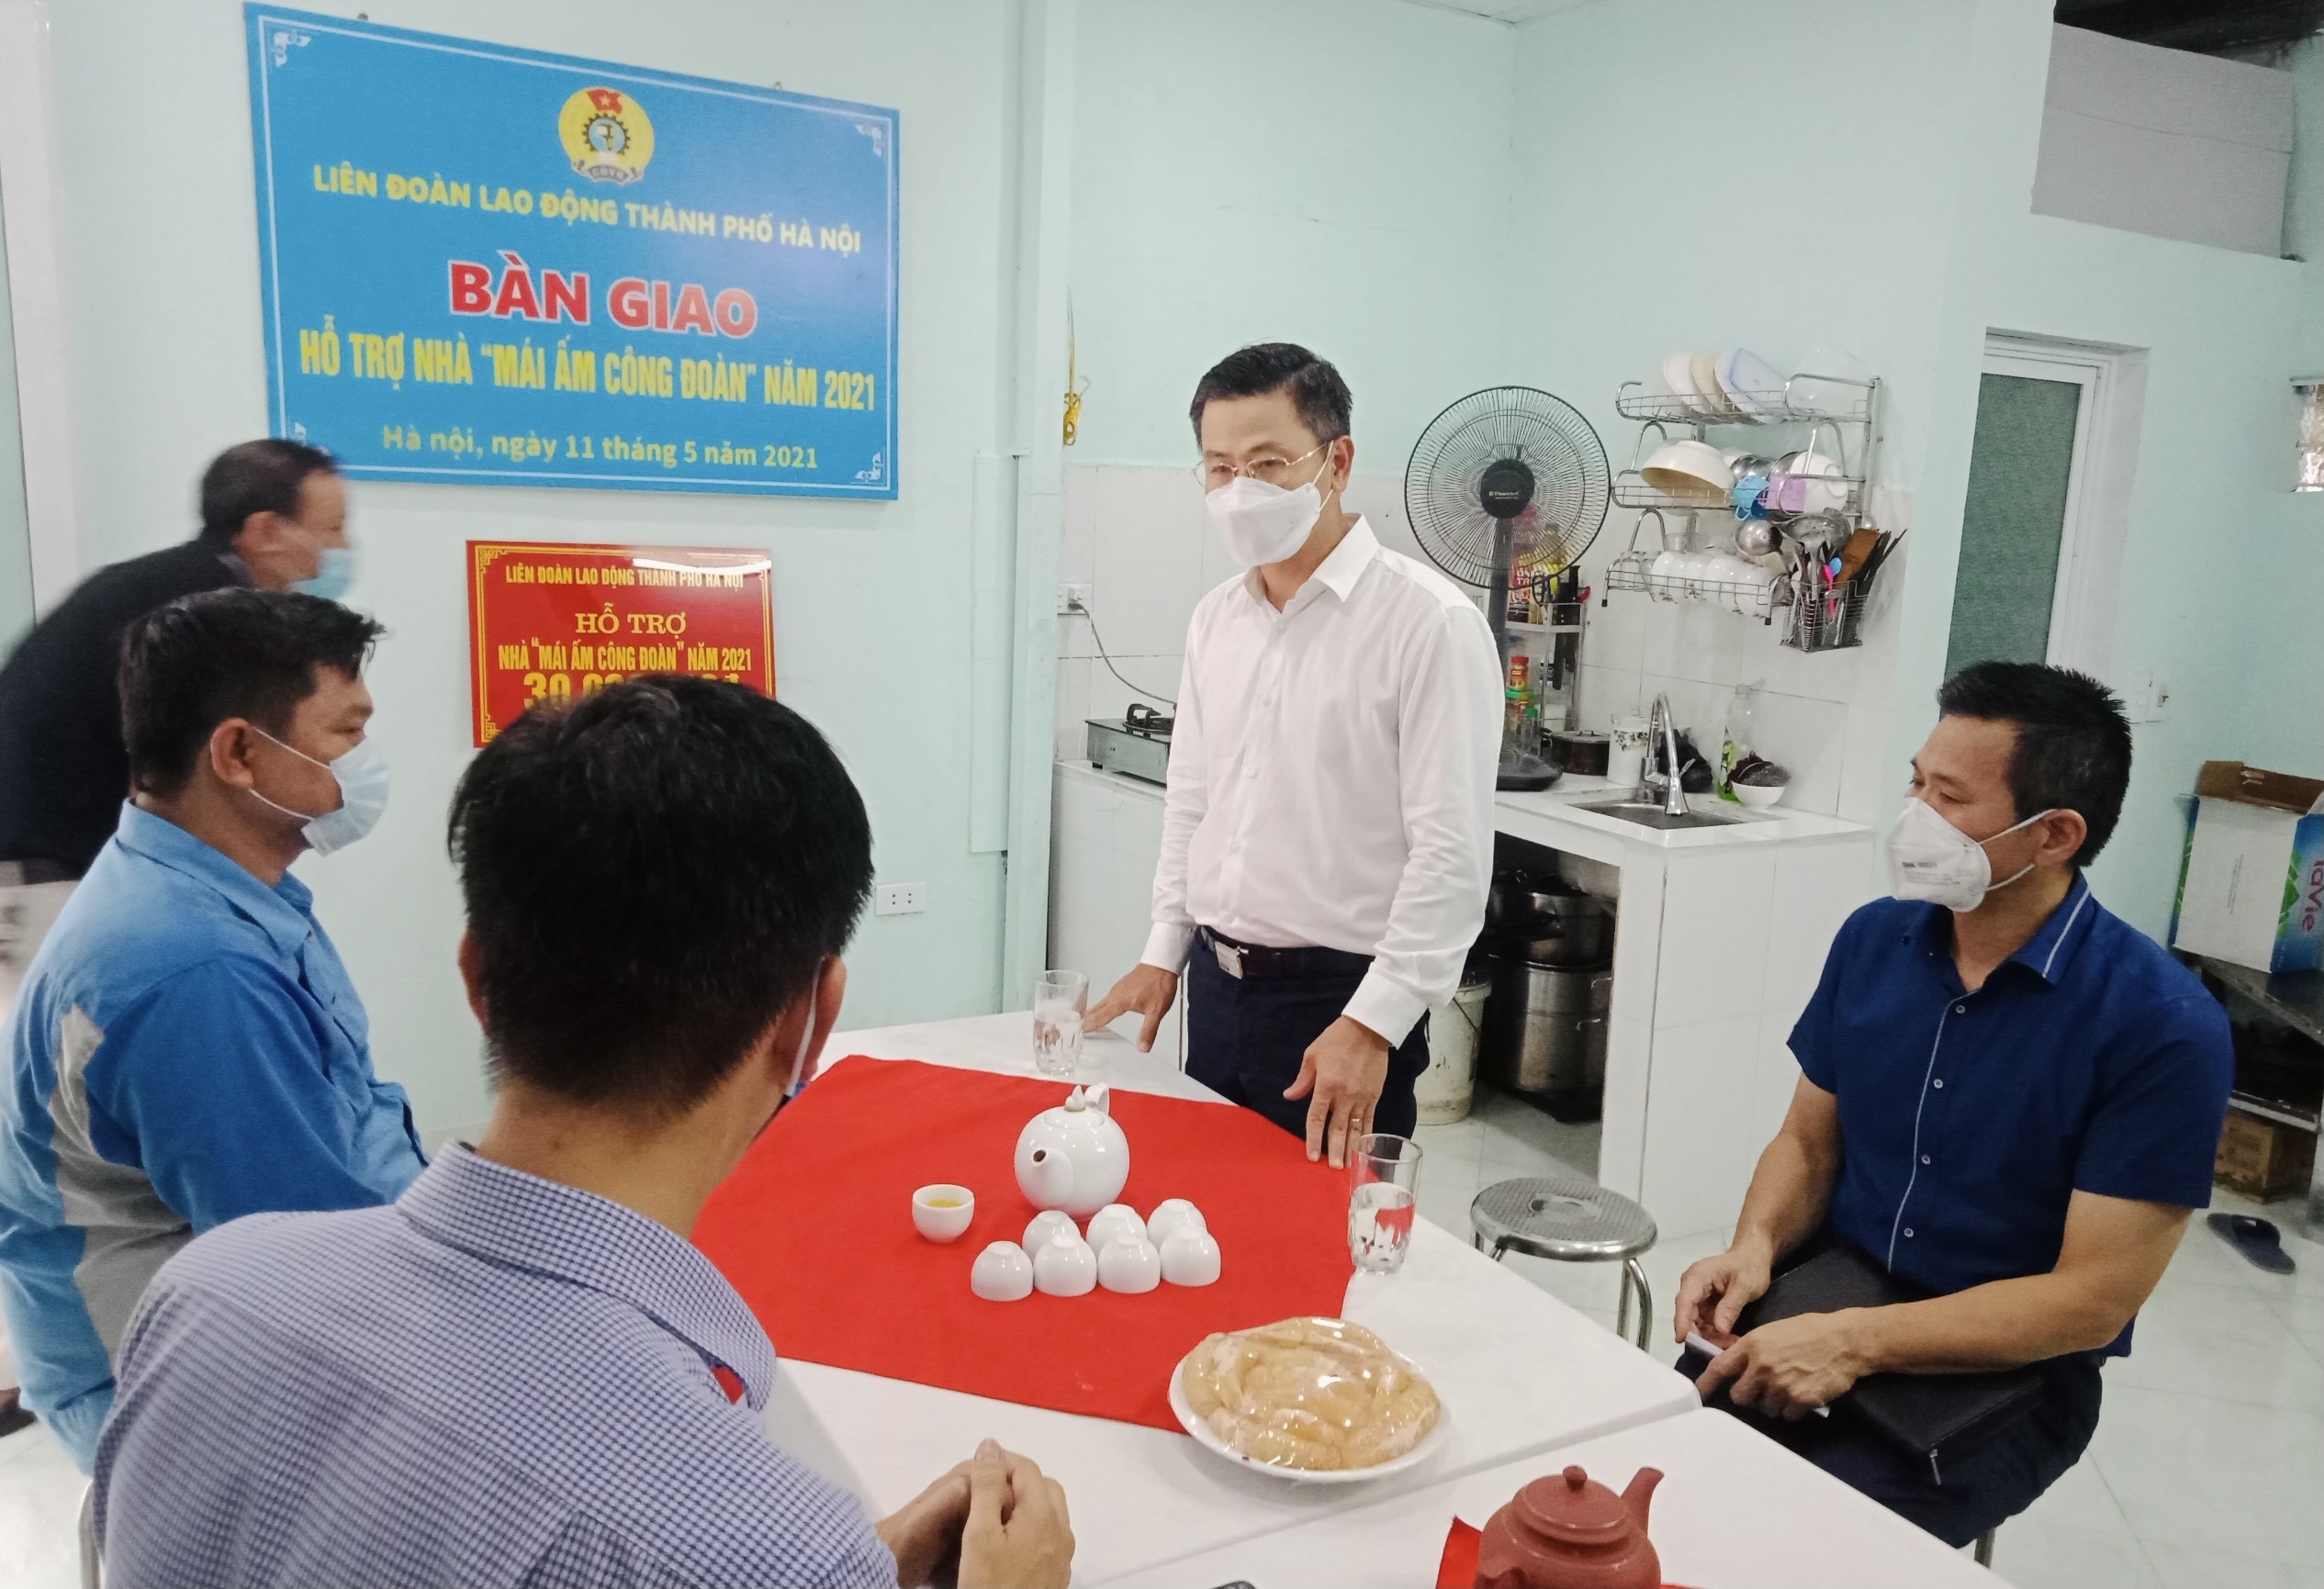 Chủ tịch Liên đoàn Lao động Thành phố Nguyễn Phi Thường trao kinh phí sửa chữa “Mái ấm Công đoàn” cho đoàn viên có hoàn cảnh khó khăn